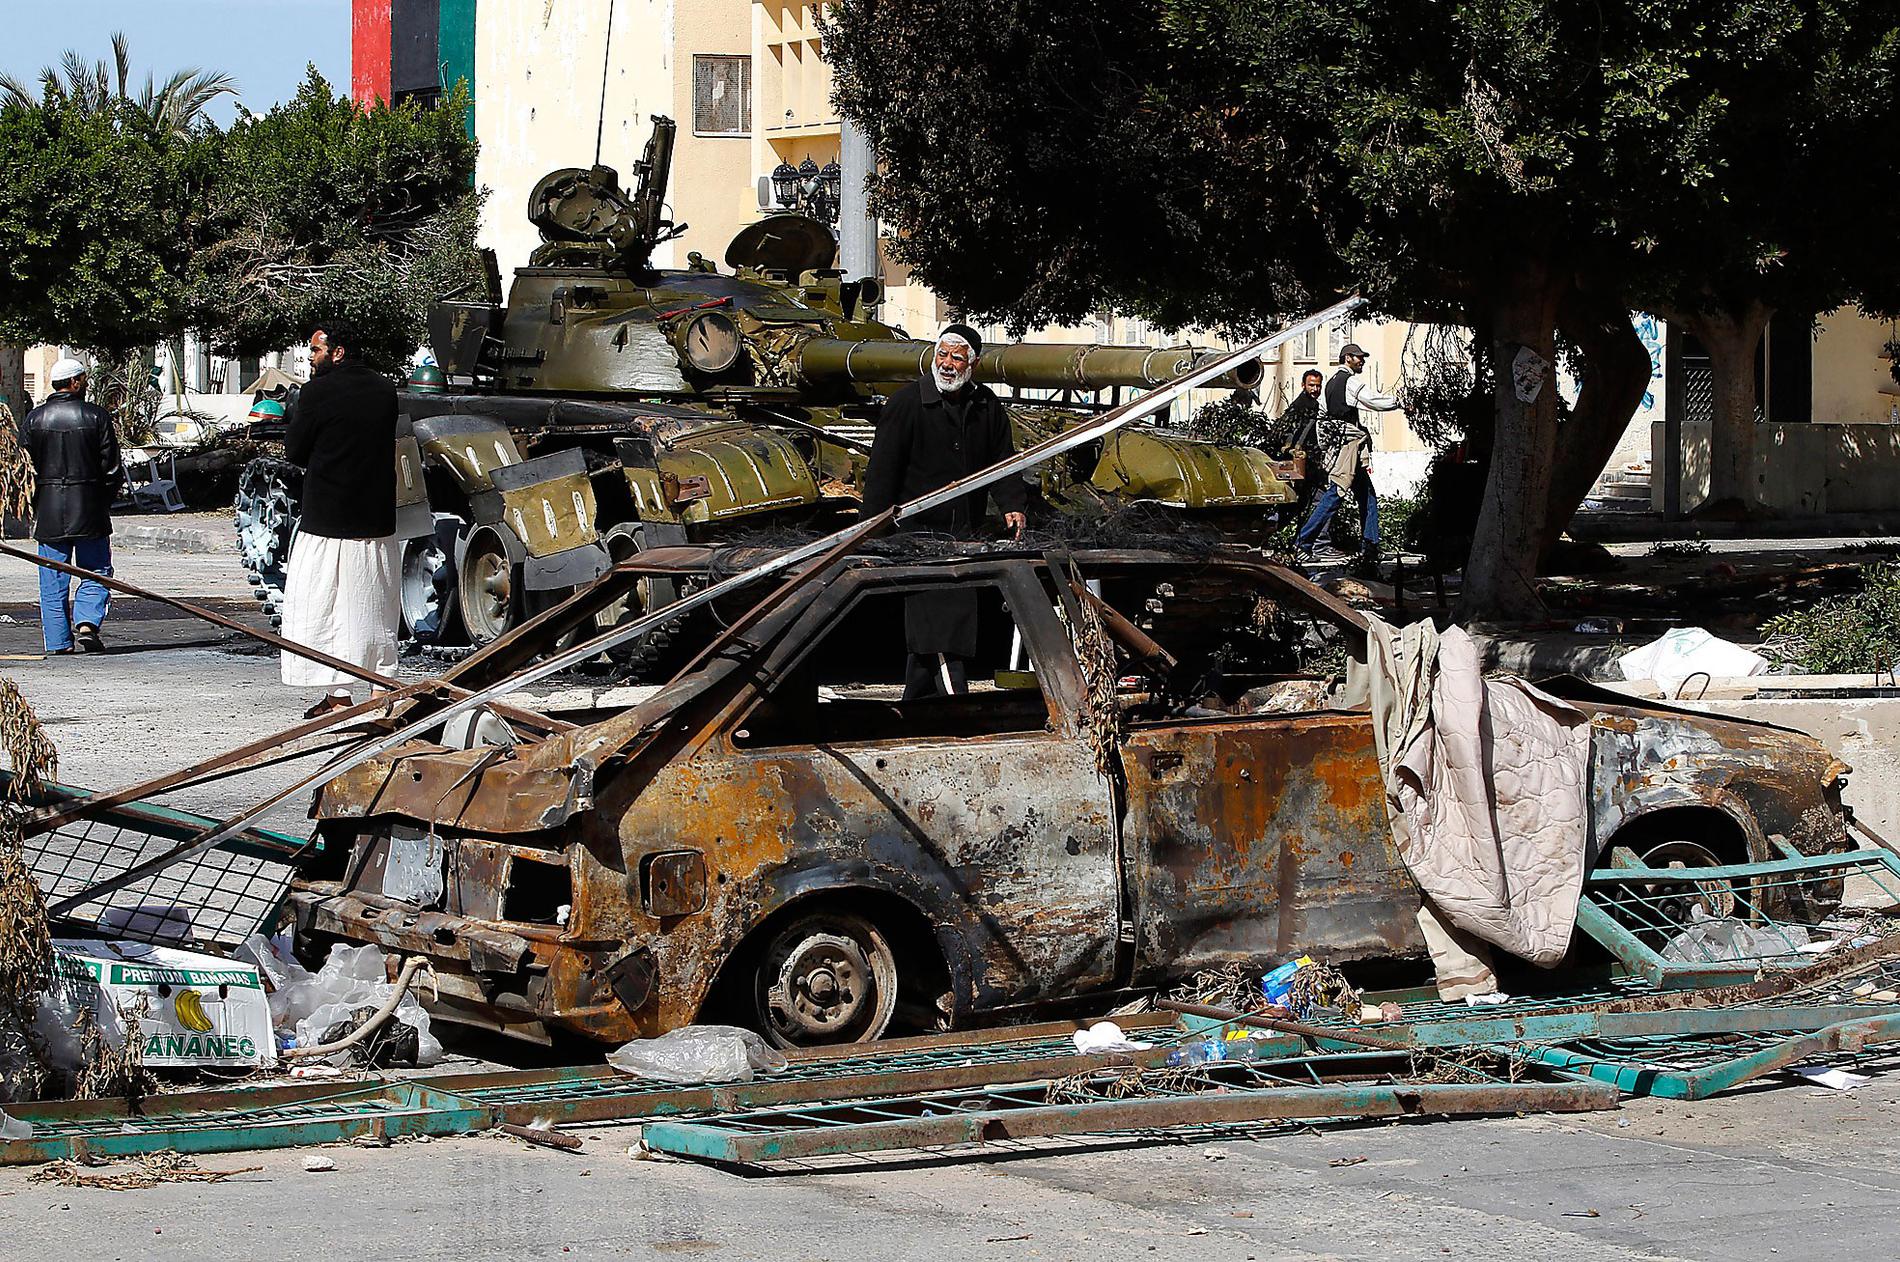 stridsvagnarna RULLAR in Libyens diktator fortsätter att klamra sig fast vid makten trots veckolånga protester. I går trappades striderna upp mellan Gaddafitrogna styrkor och rebeller när 20 stridsvagnar rullade in i Zawiya. De sköt raketer mot byggnader kring torget och minst 30 personer dödades.